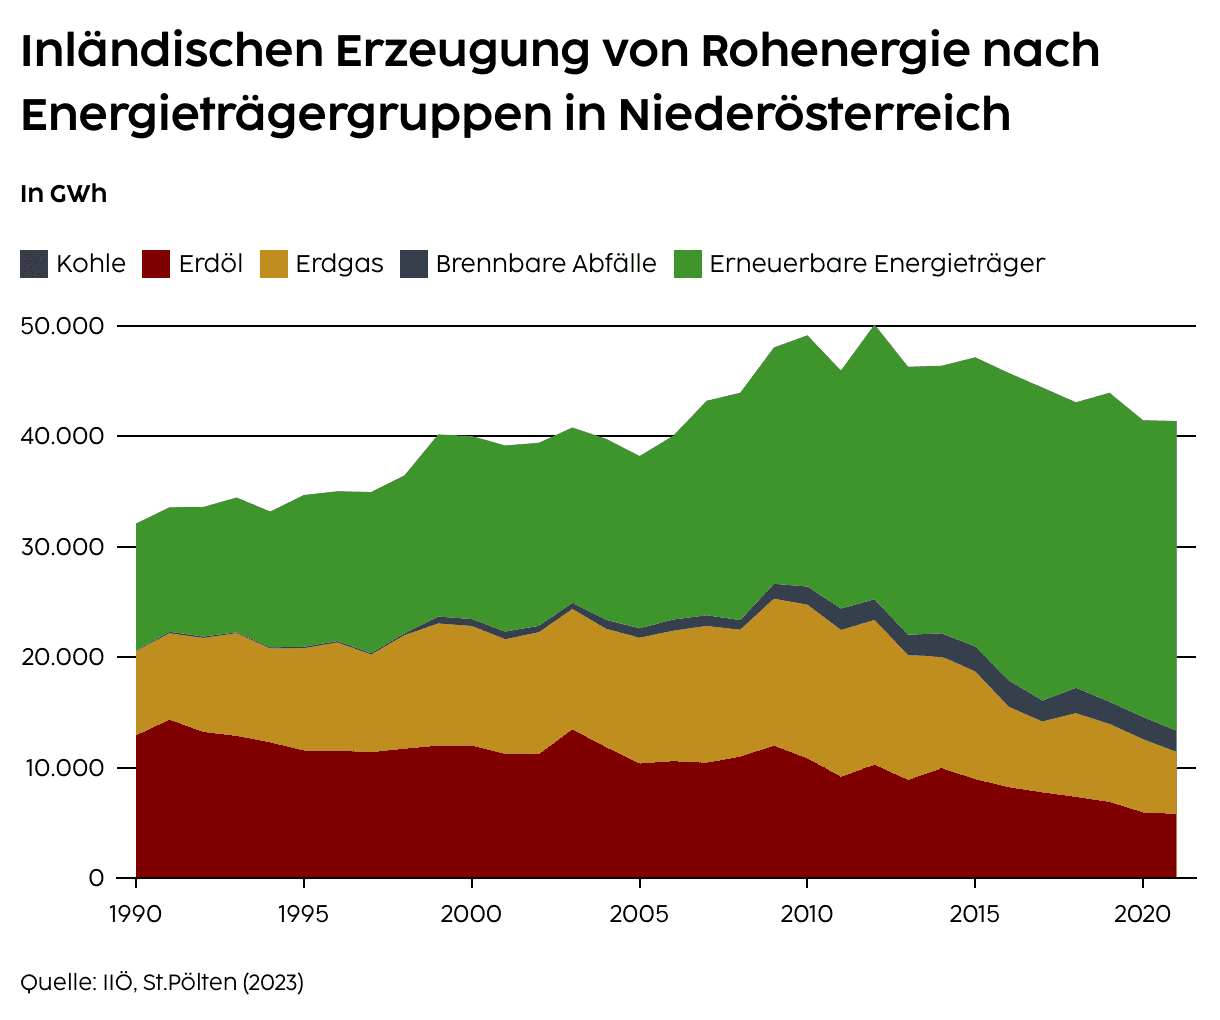 Inländische Erzeugung von Rohenergie nach Energieträgergruppen in Niederösterreich und Österreich